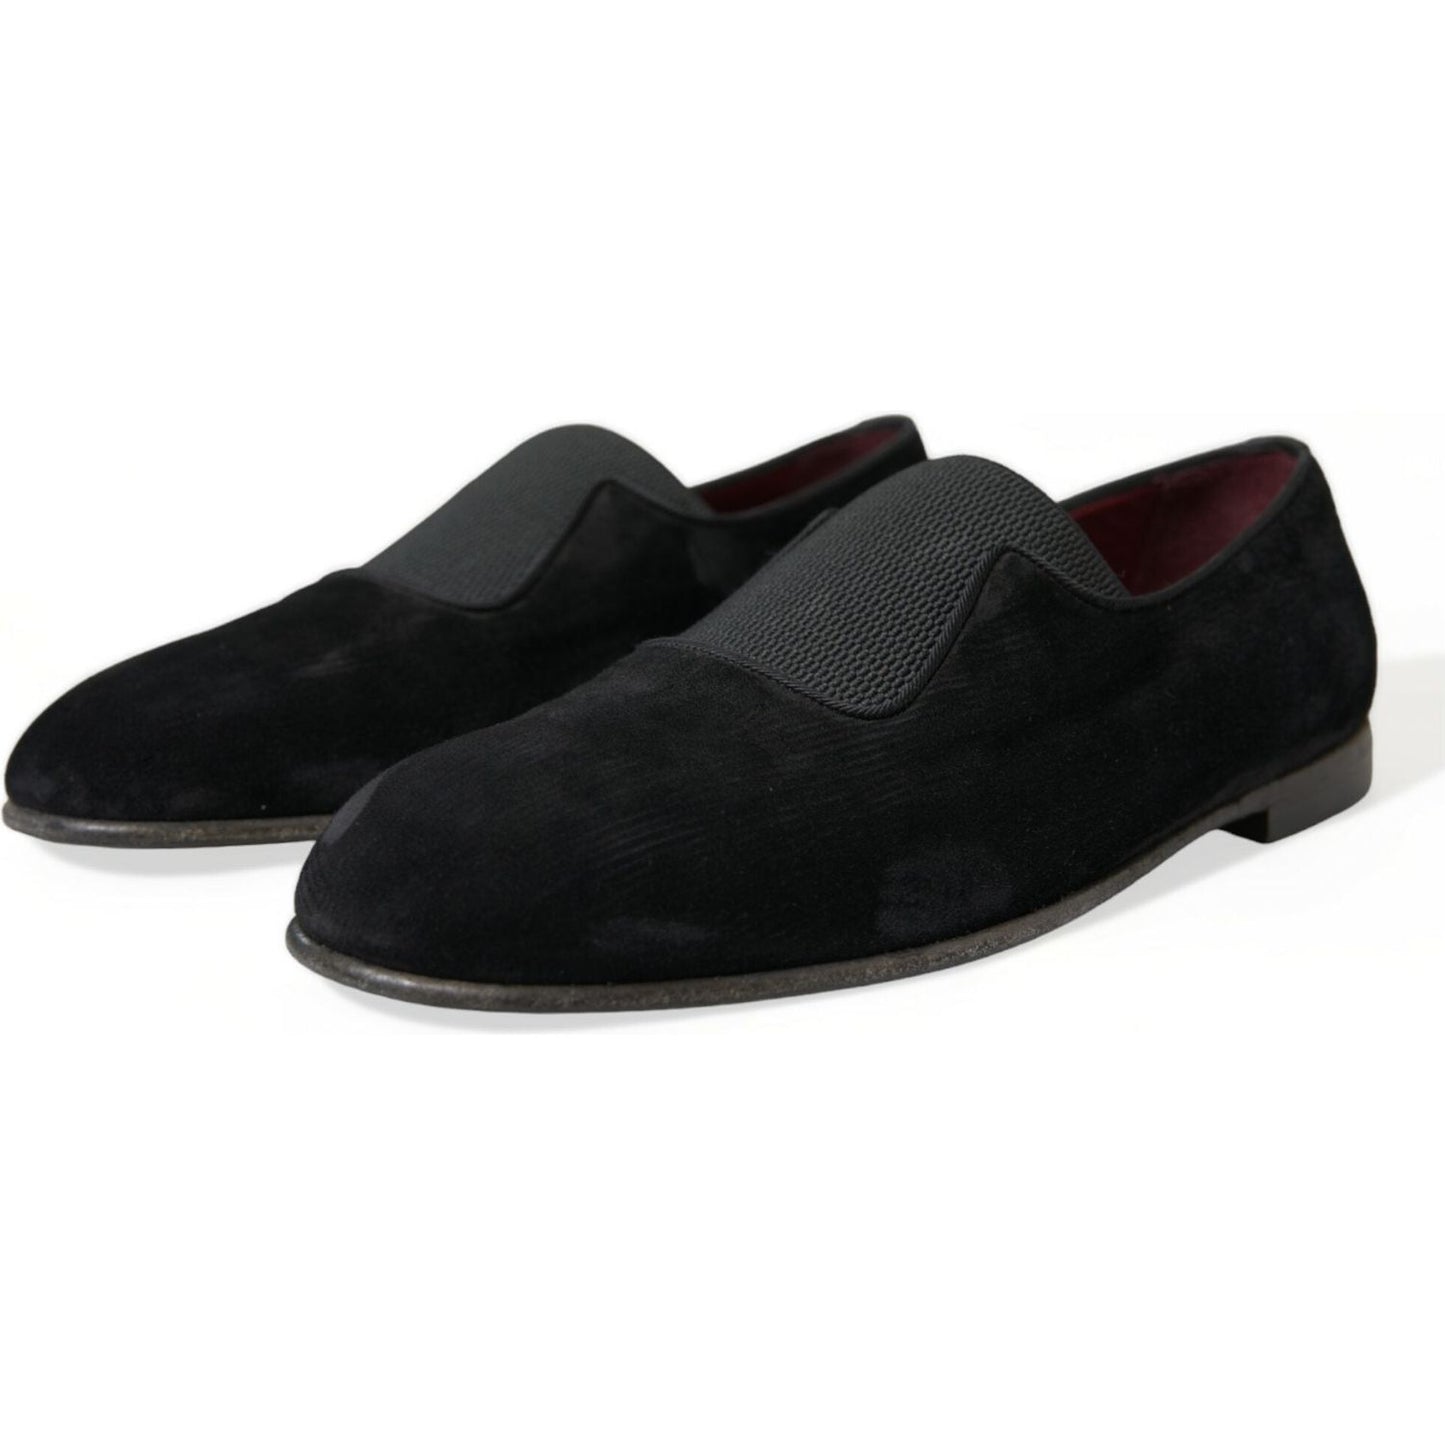 Dolce & Gabbana Elegant Black Velor Loafers for the Discerning Gentleman black-runway-velour-amalfi-loafers-shoes